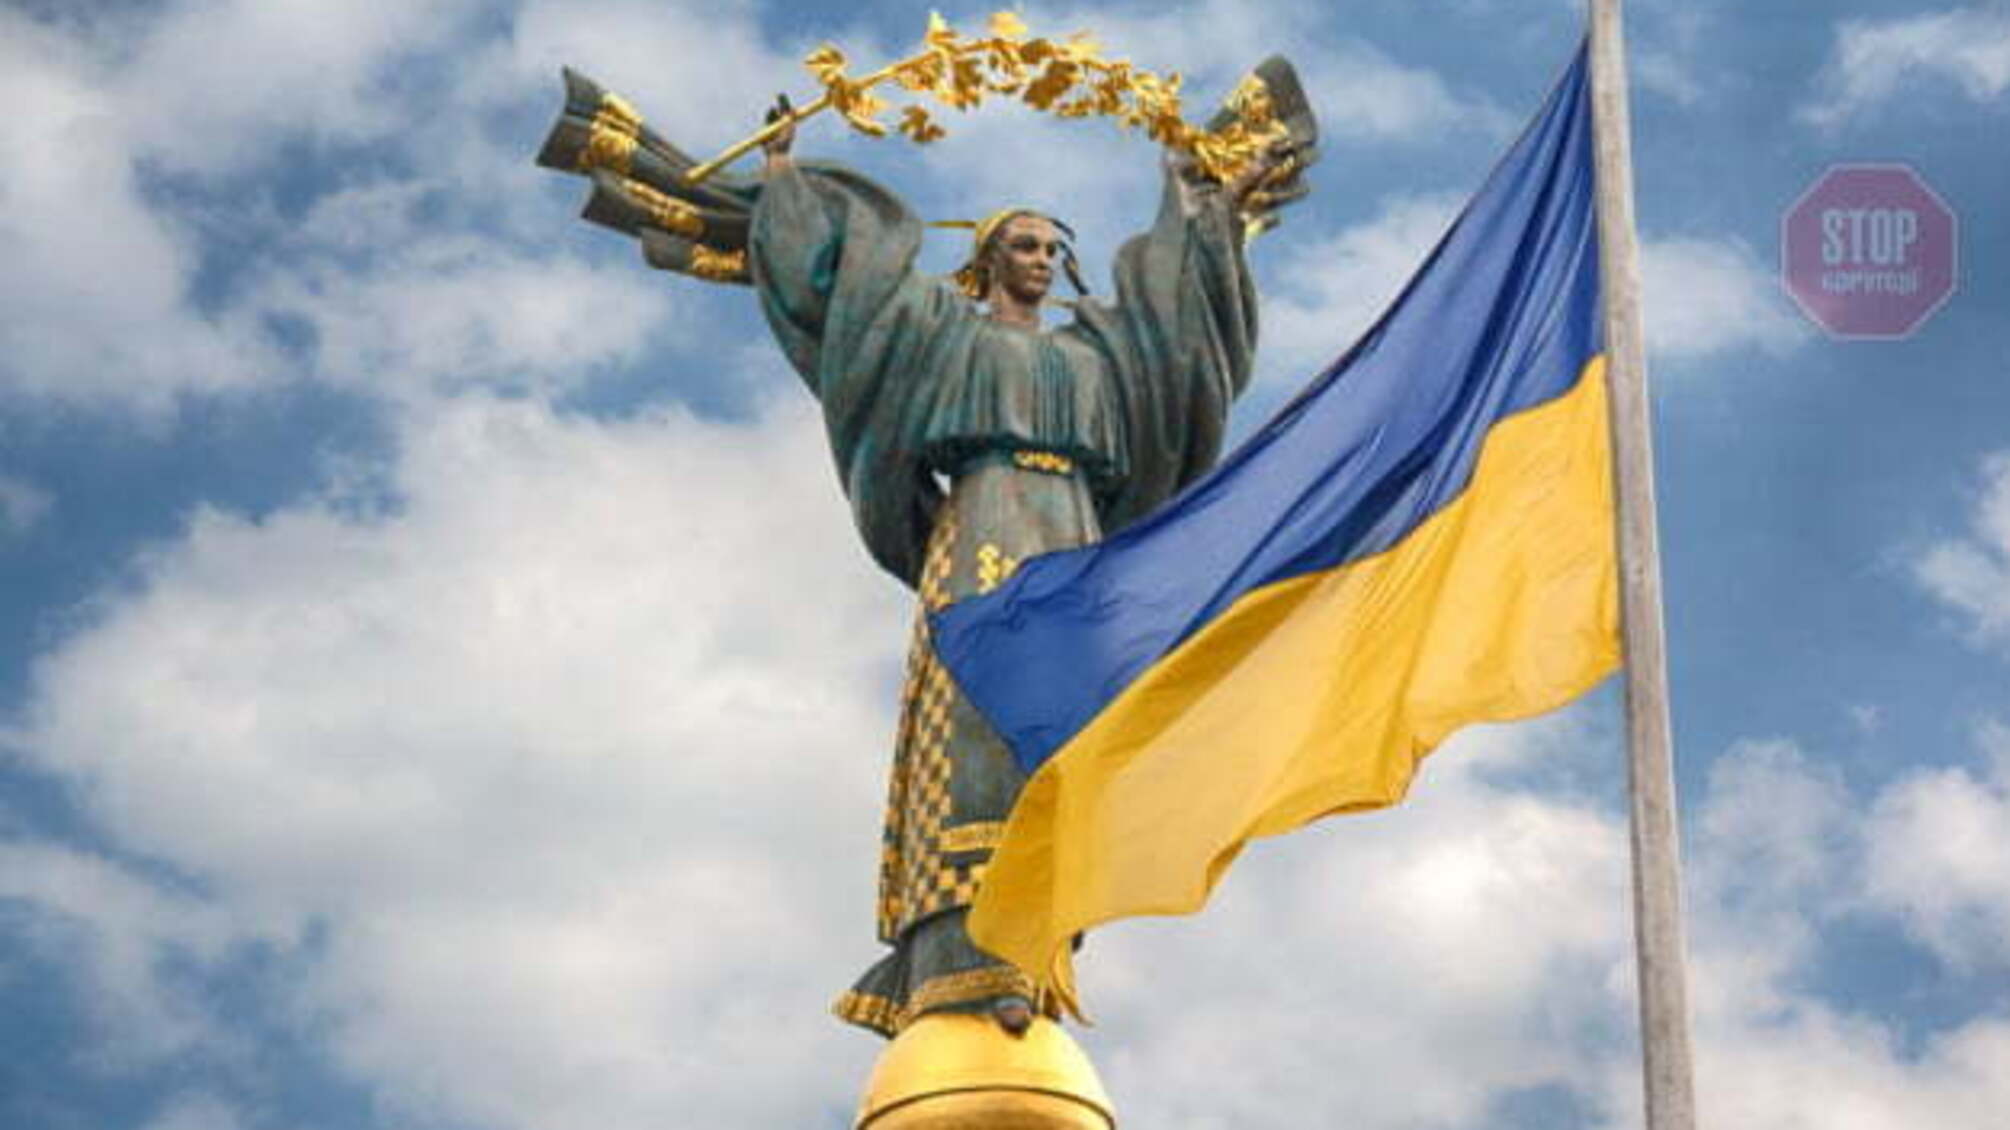 ООН: Население Украины сократится до 35 миллионов к 2050 году